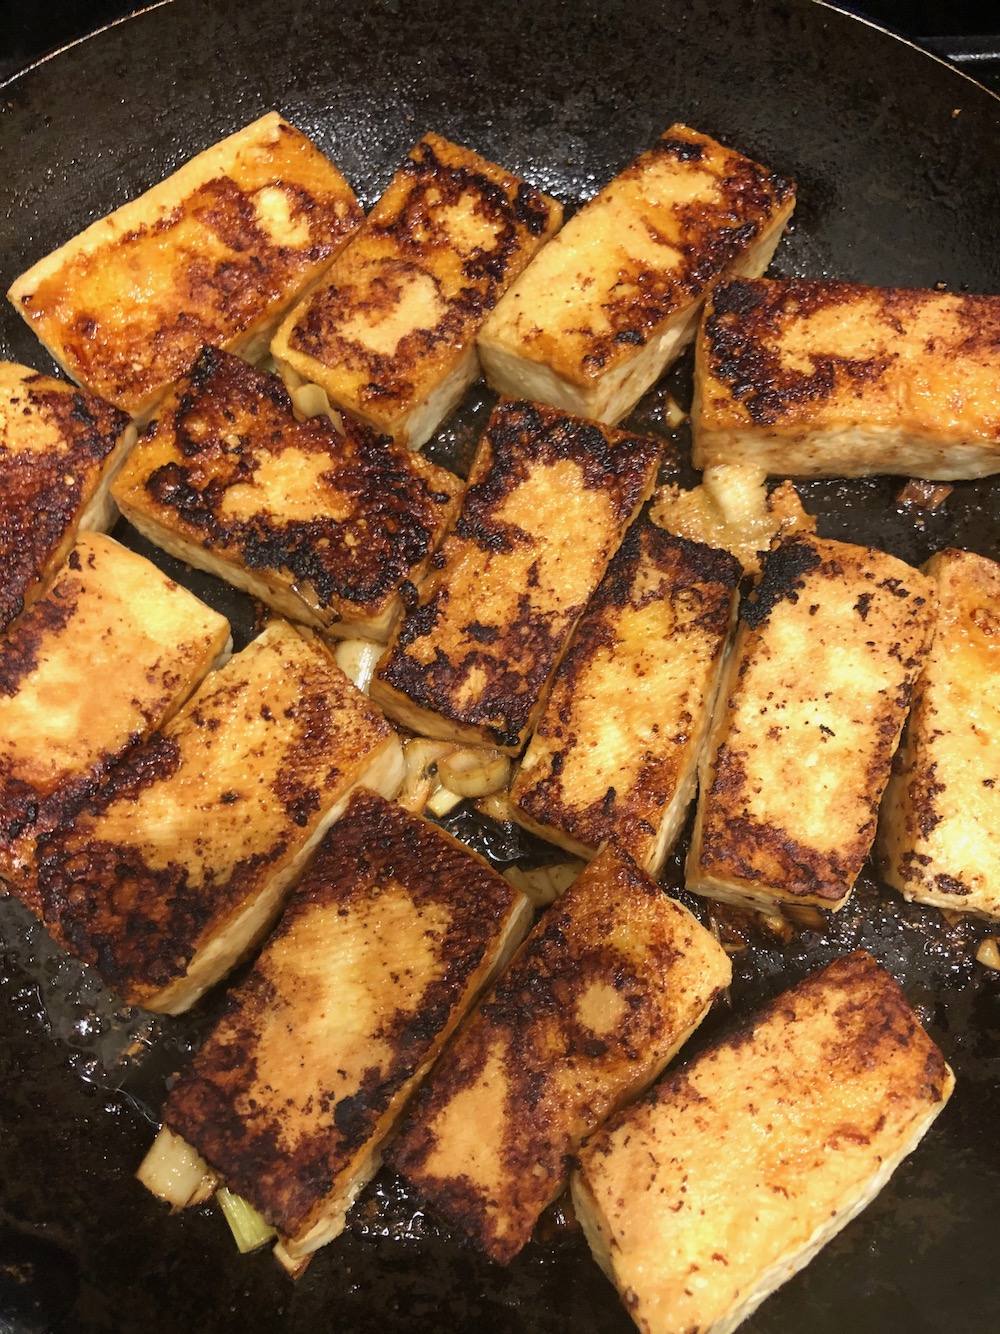 Pan fry that tofu!